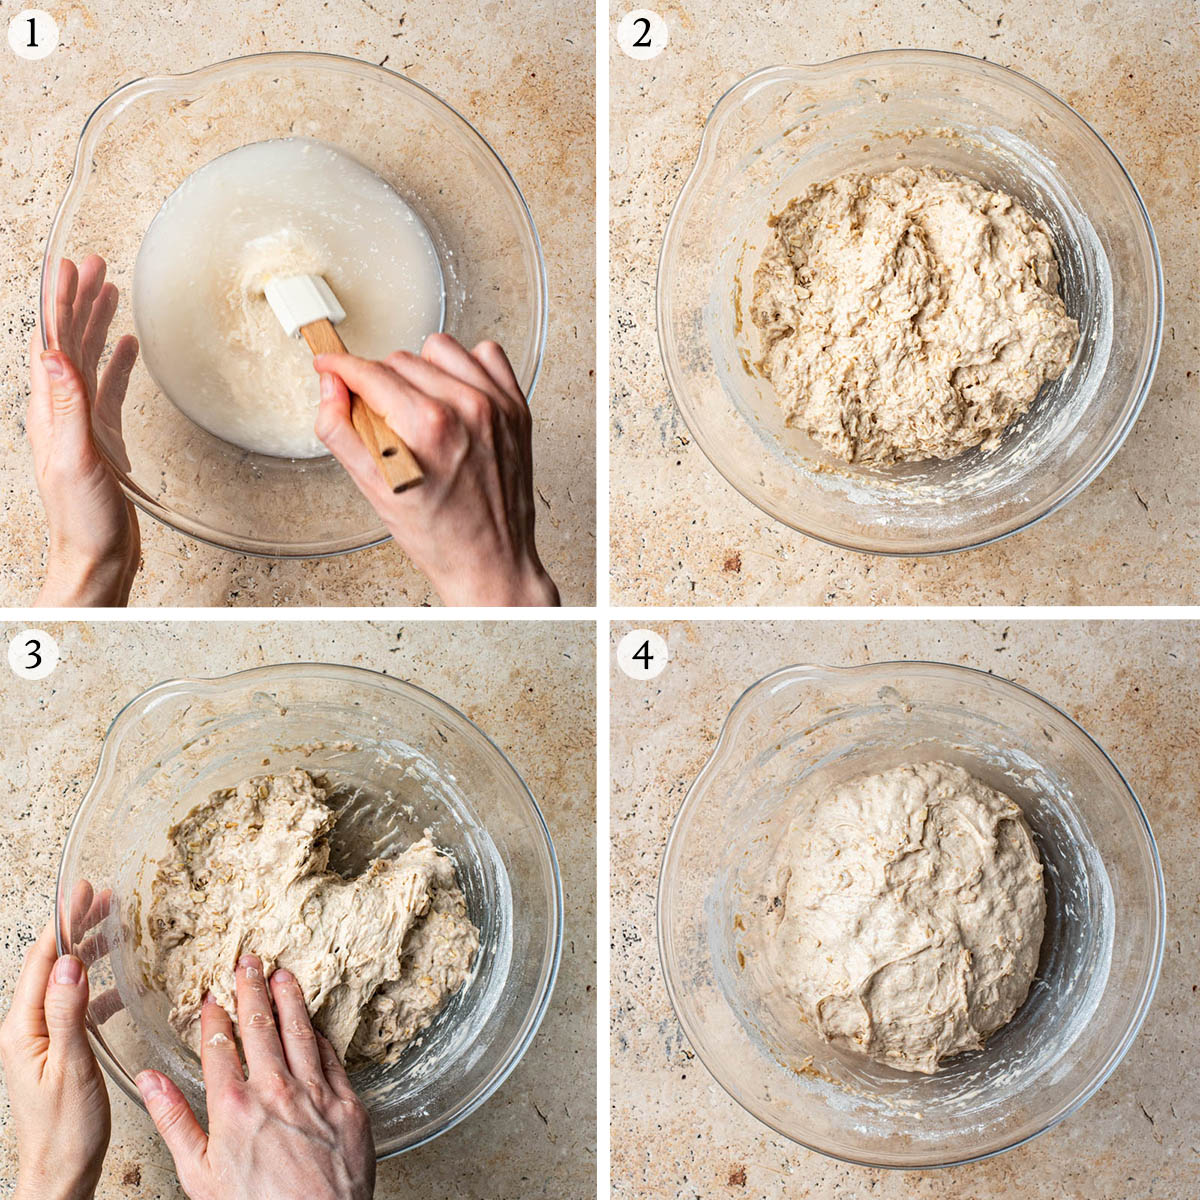 Oatmeal sourdough steps 1 to 4.